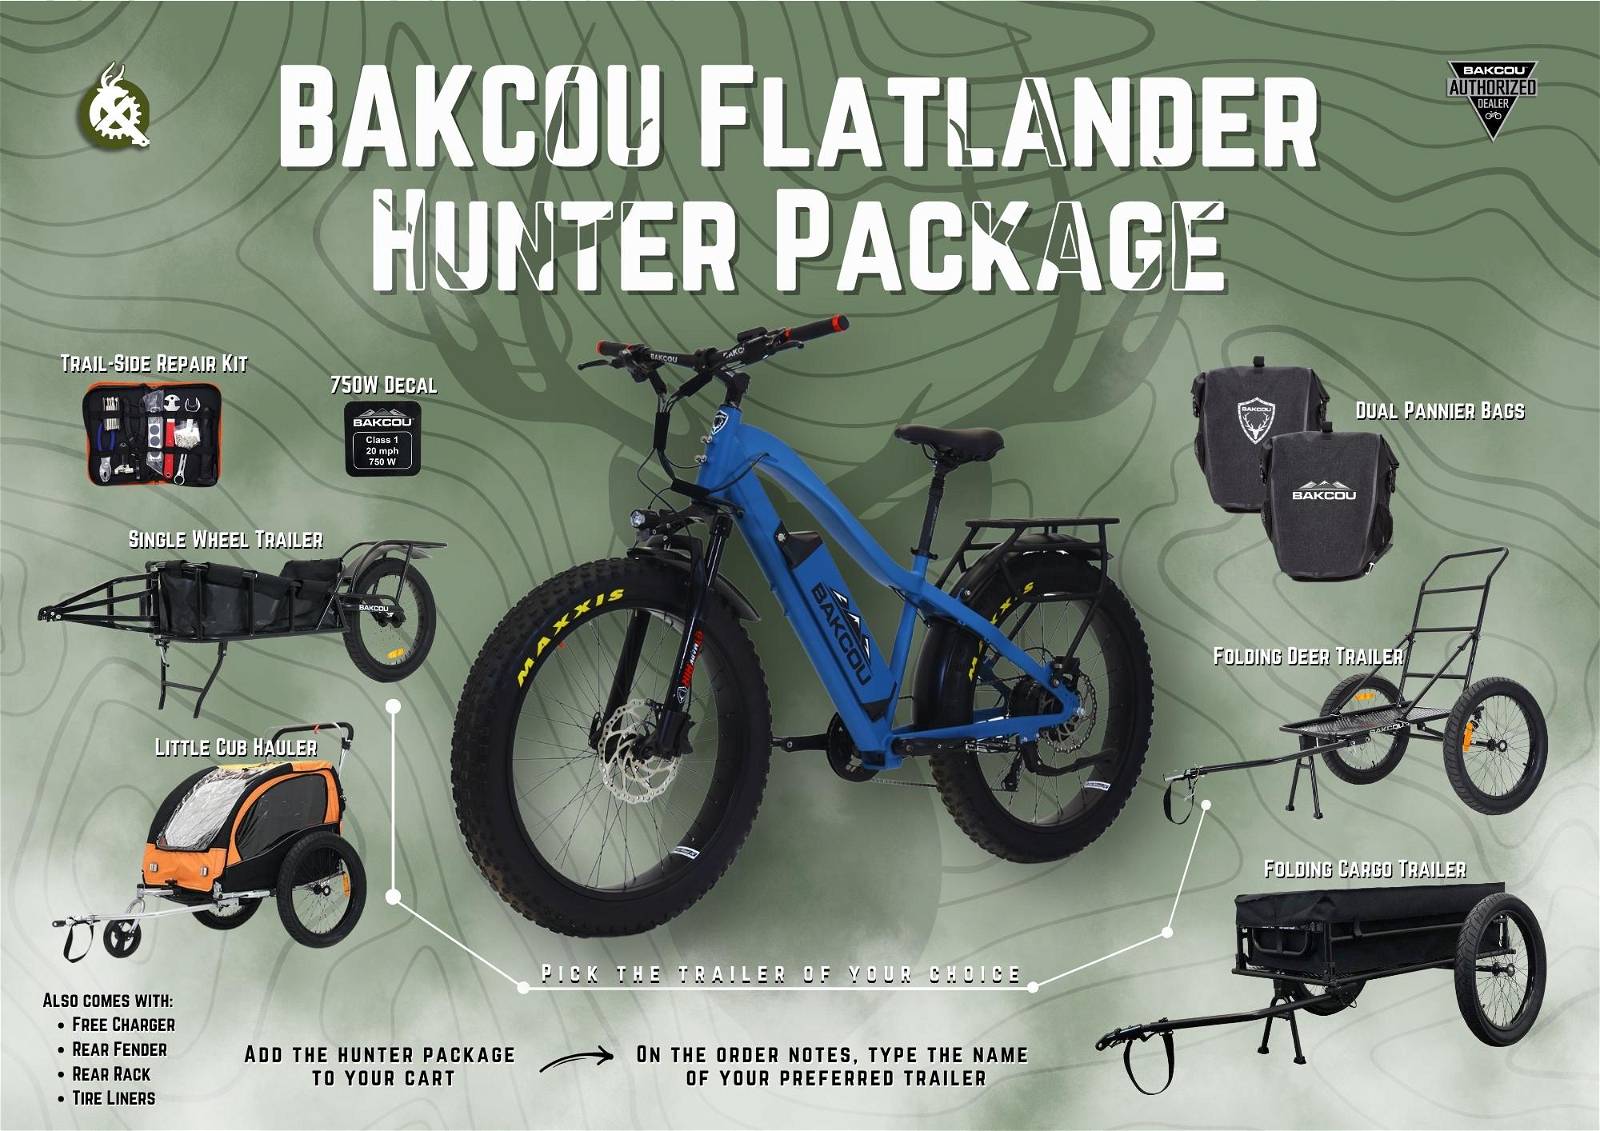 BAKCOU Flatlander Hunter Package